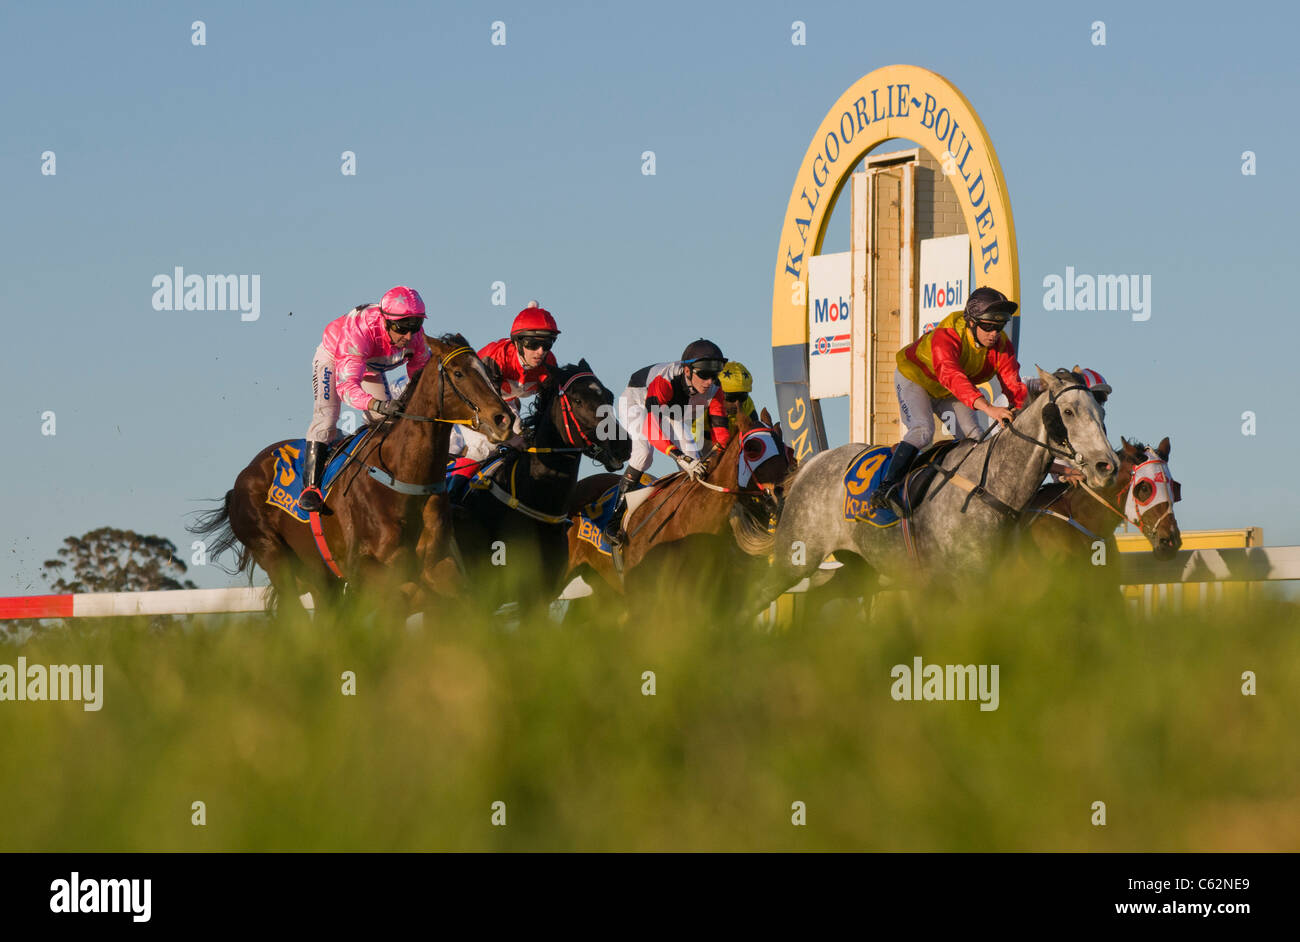 Horse racing in Kalgoorlie Western Australia at the Kalgoorlie-Boulder Racing Club Stock Photo